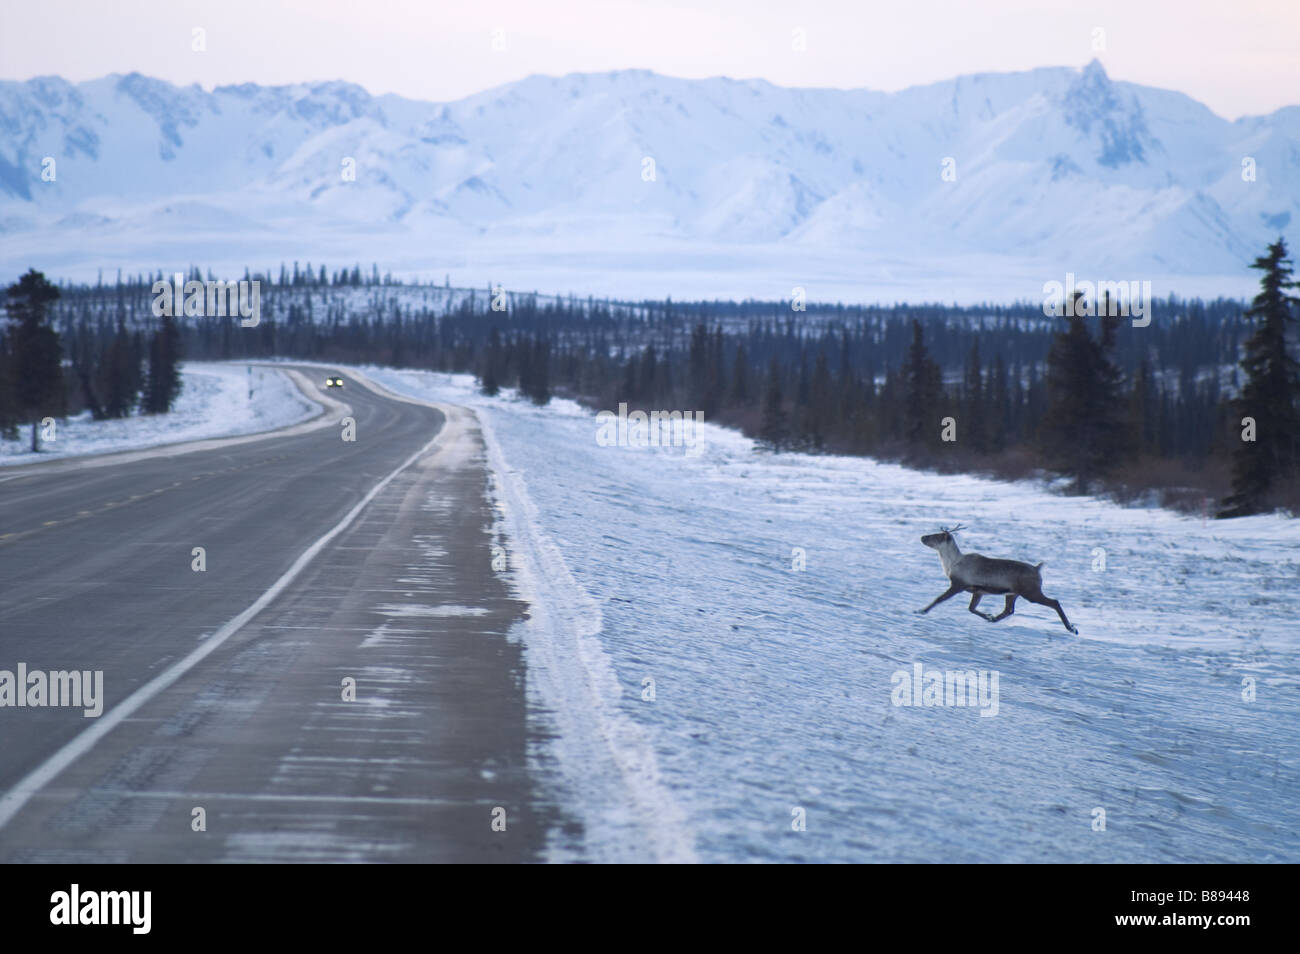 Le caribou traverse la route en avant du véhicule Denali Alaska North America United States Banque D'Images